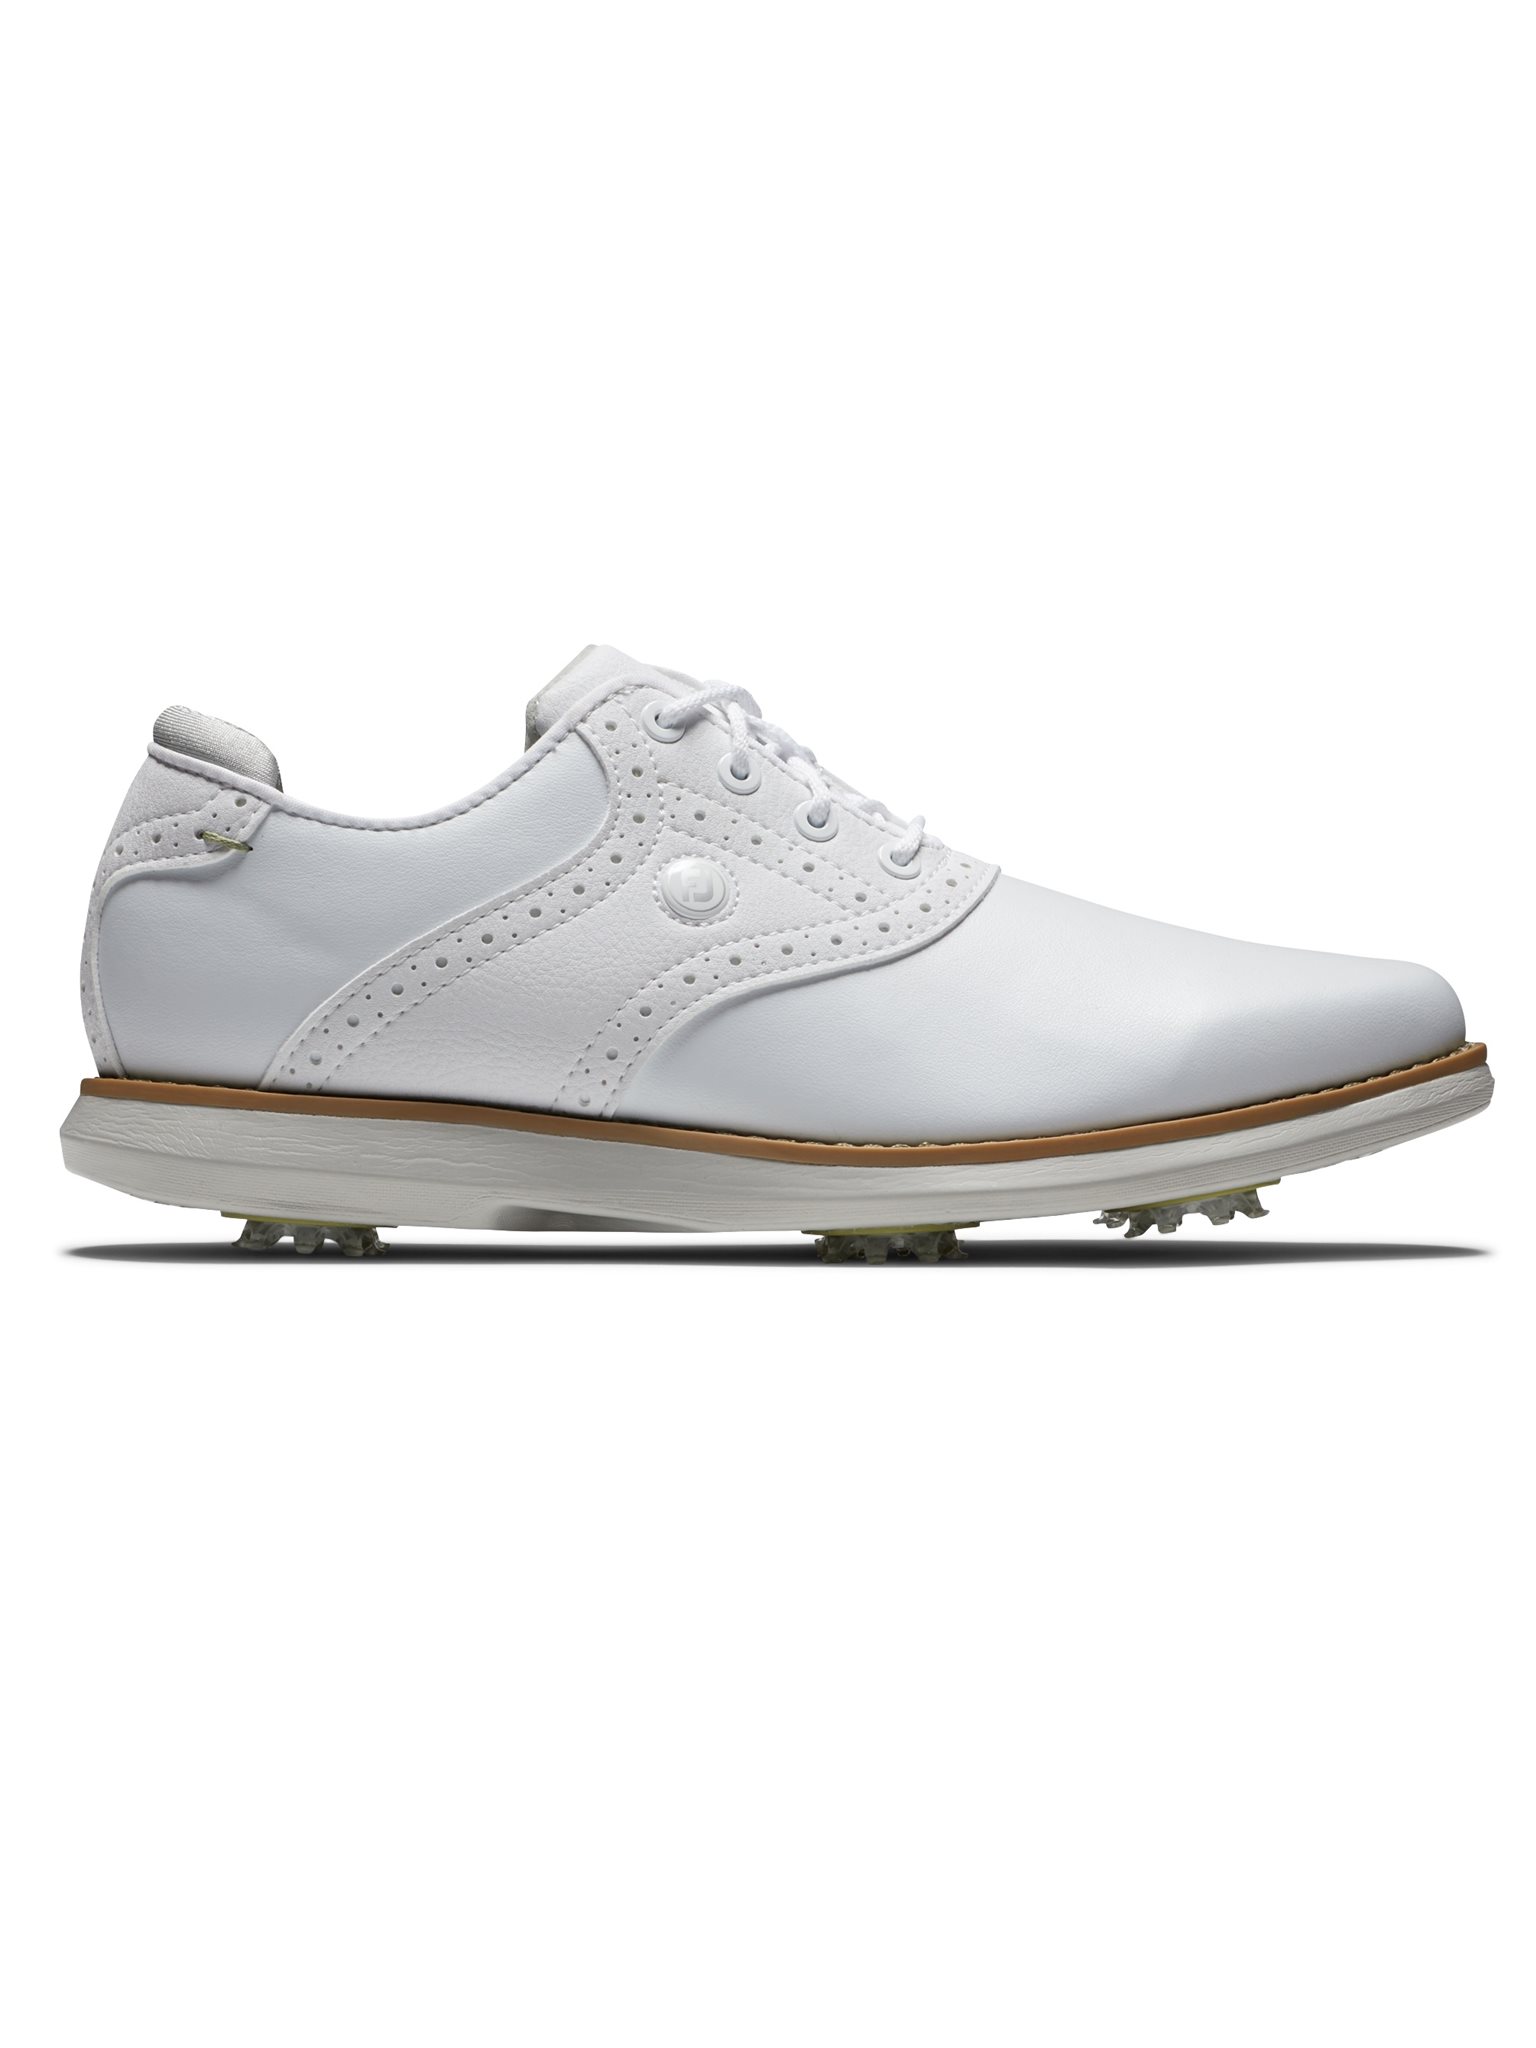 FootJoy dames golfschoenen Traditions wit - Golftassen, Golfclubs, Golfschoenen | Ook online kopen bij Golfers Point | Point